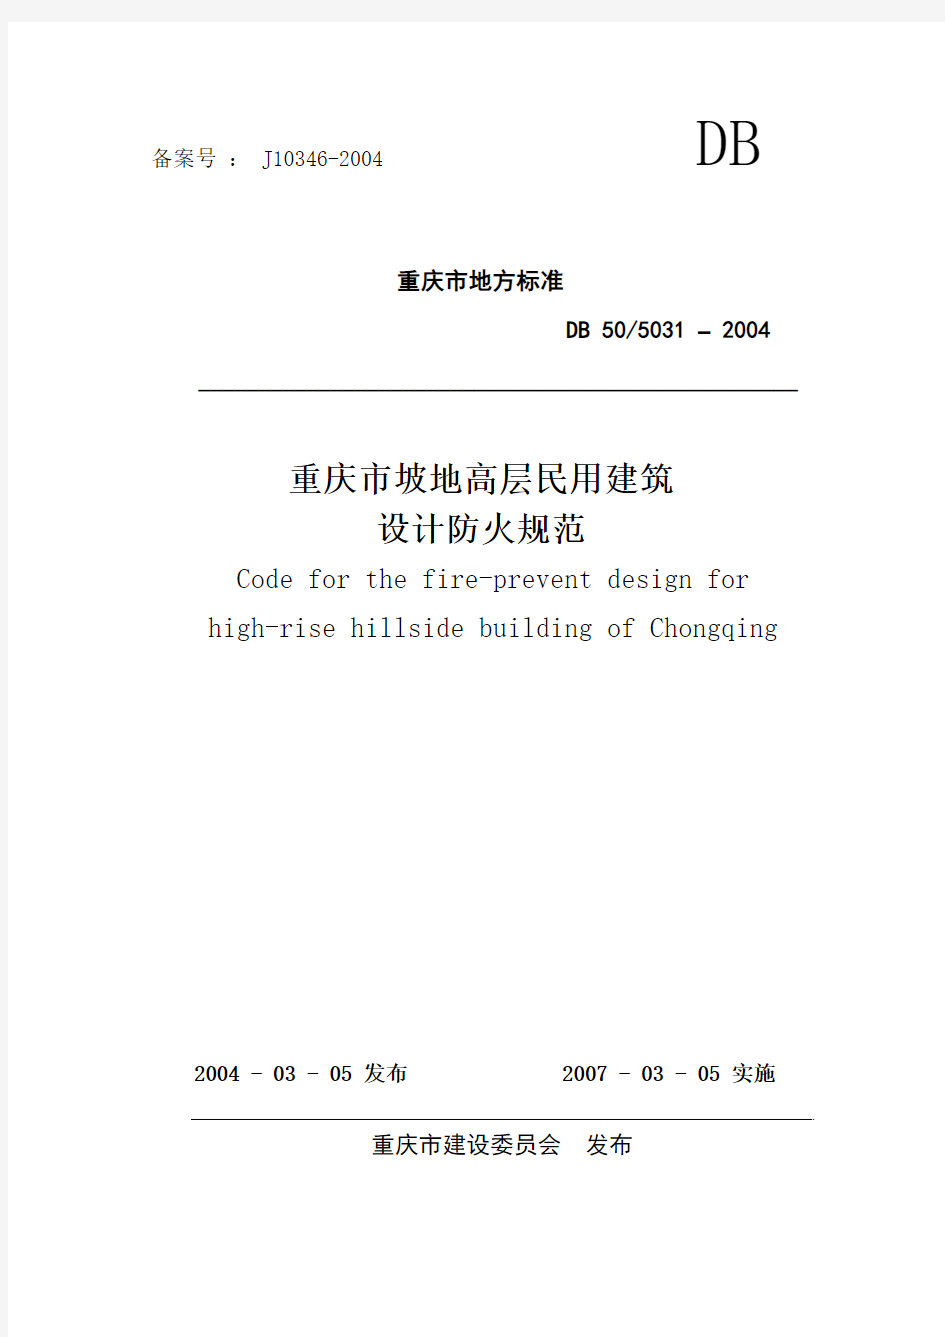 《重庆市坡地高层民用建筑设计防火规范》DB505031-2004